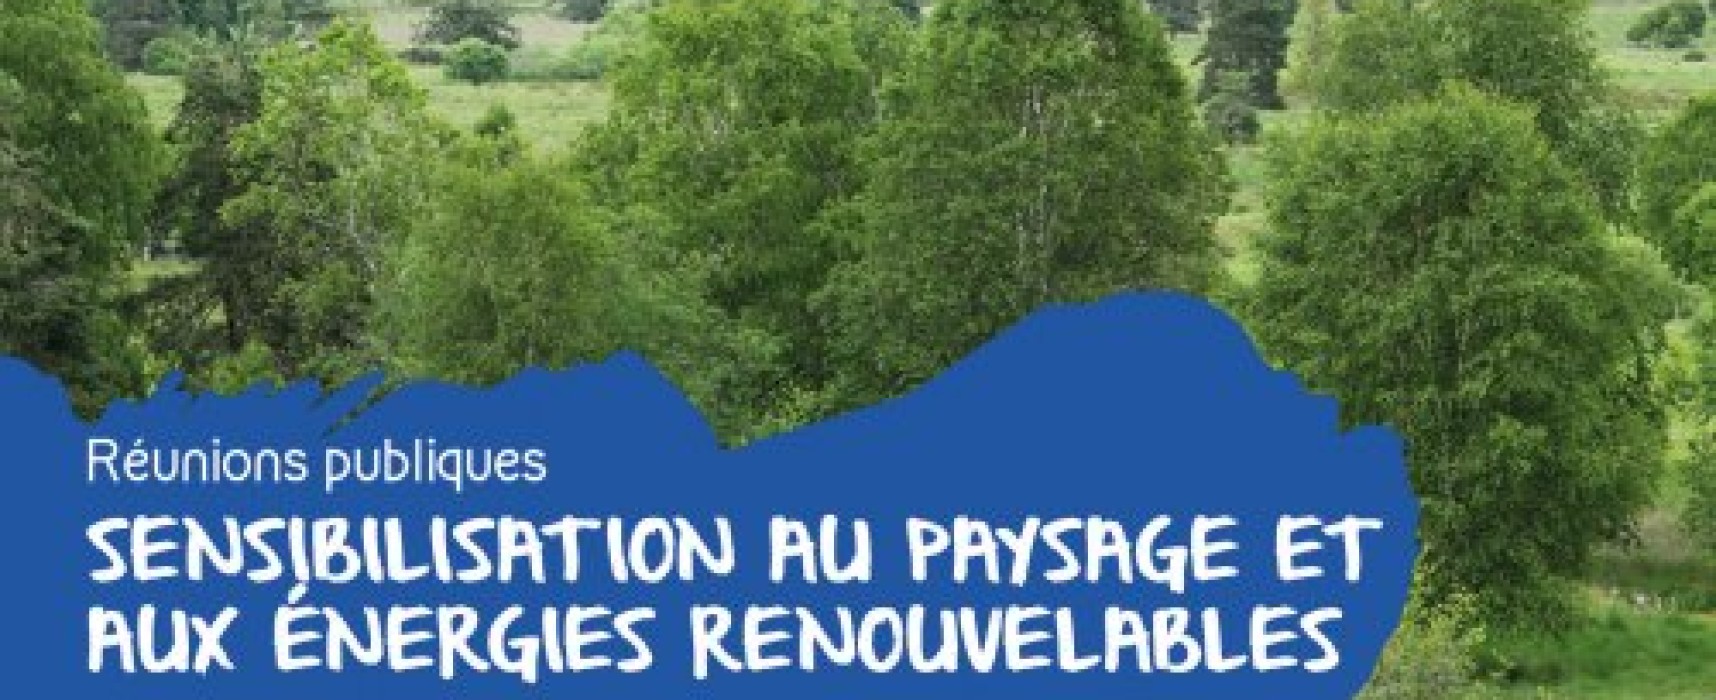 Parc naturel régional de Millevaches  – Sensibilisation au paysage et aux énergies renouvelables